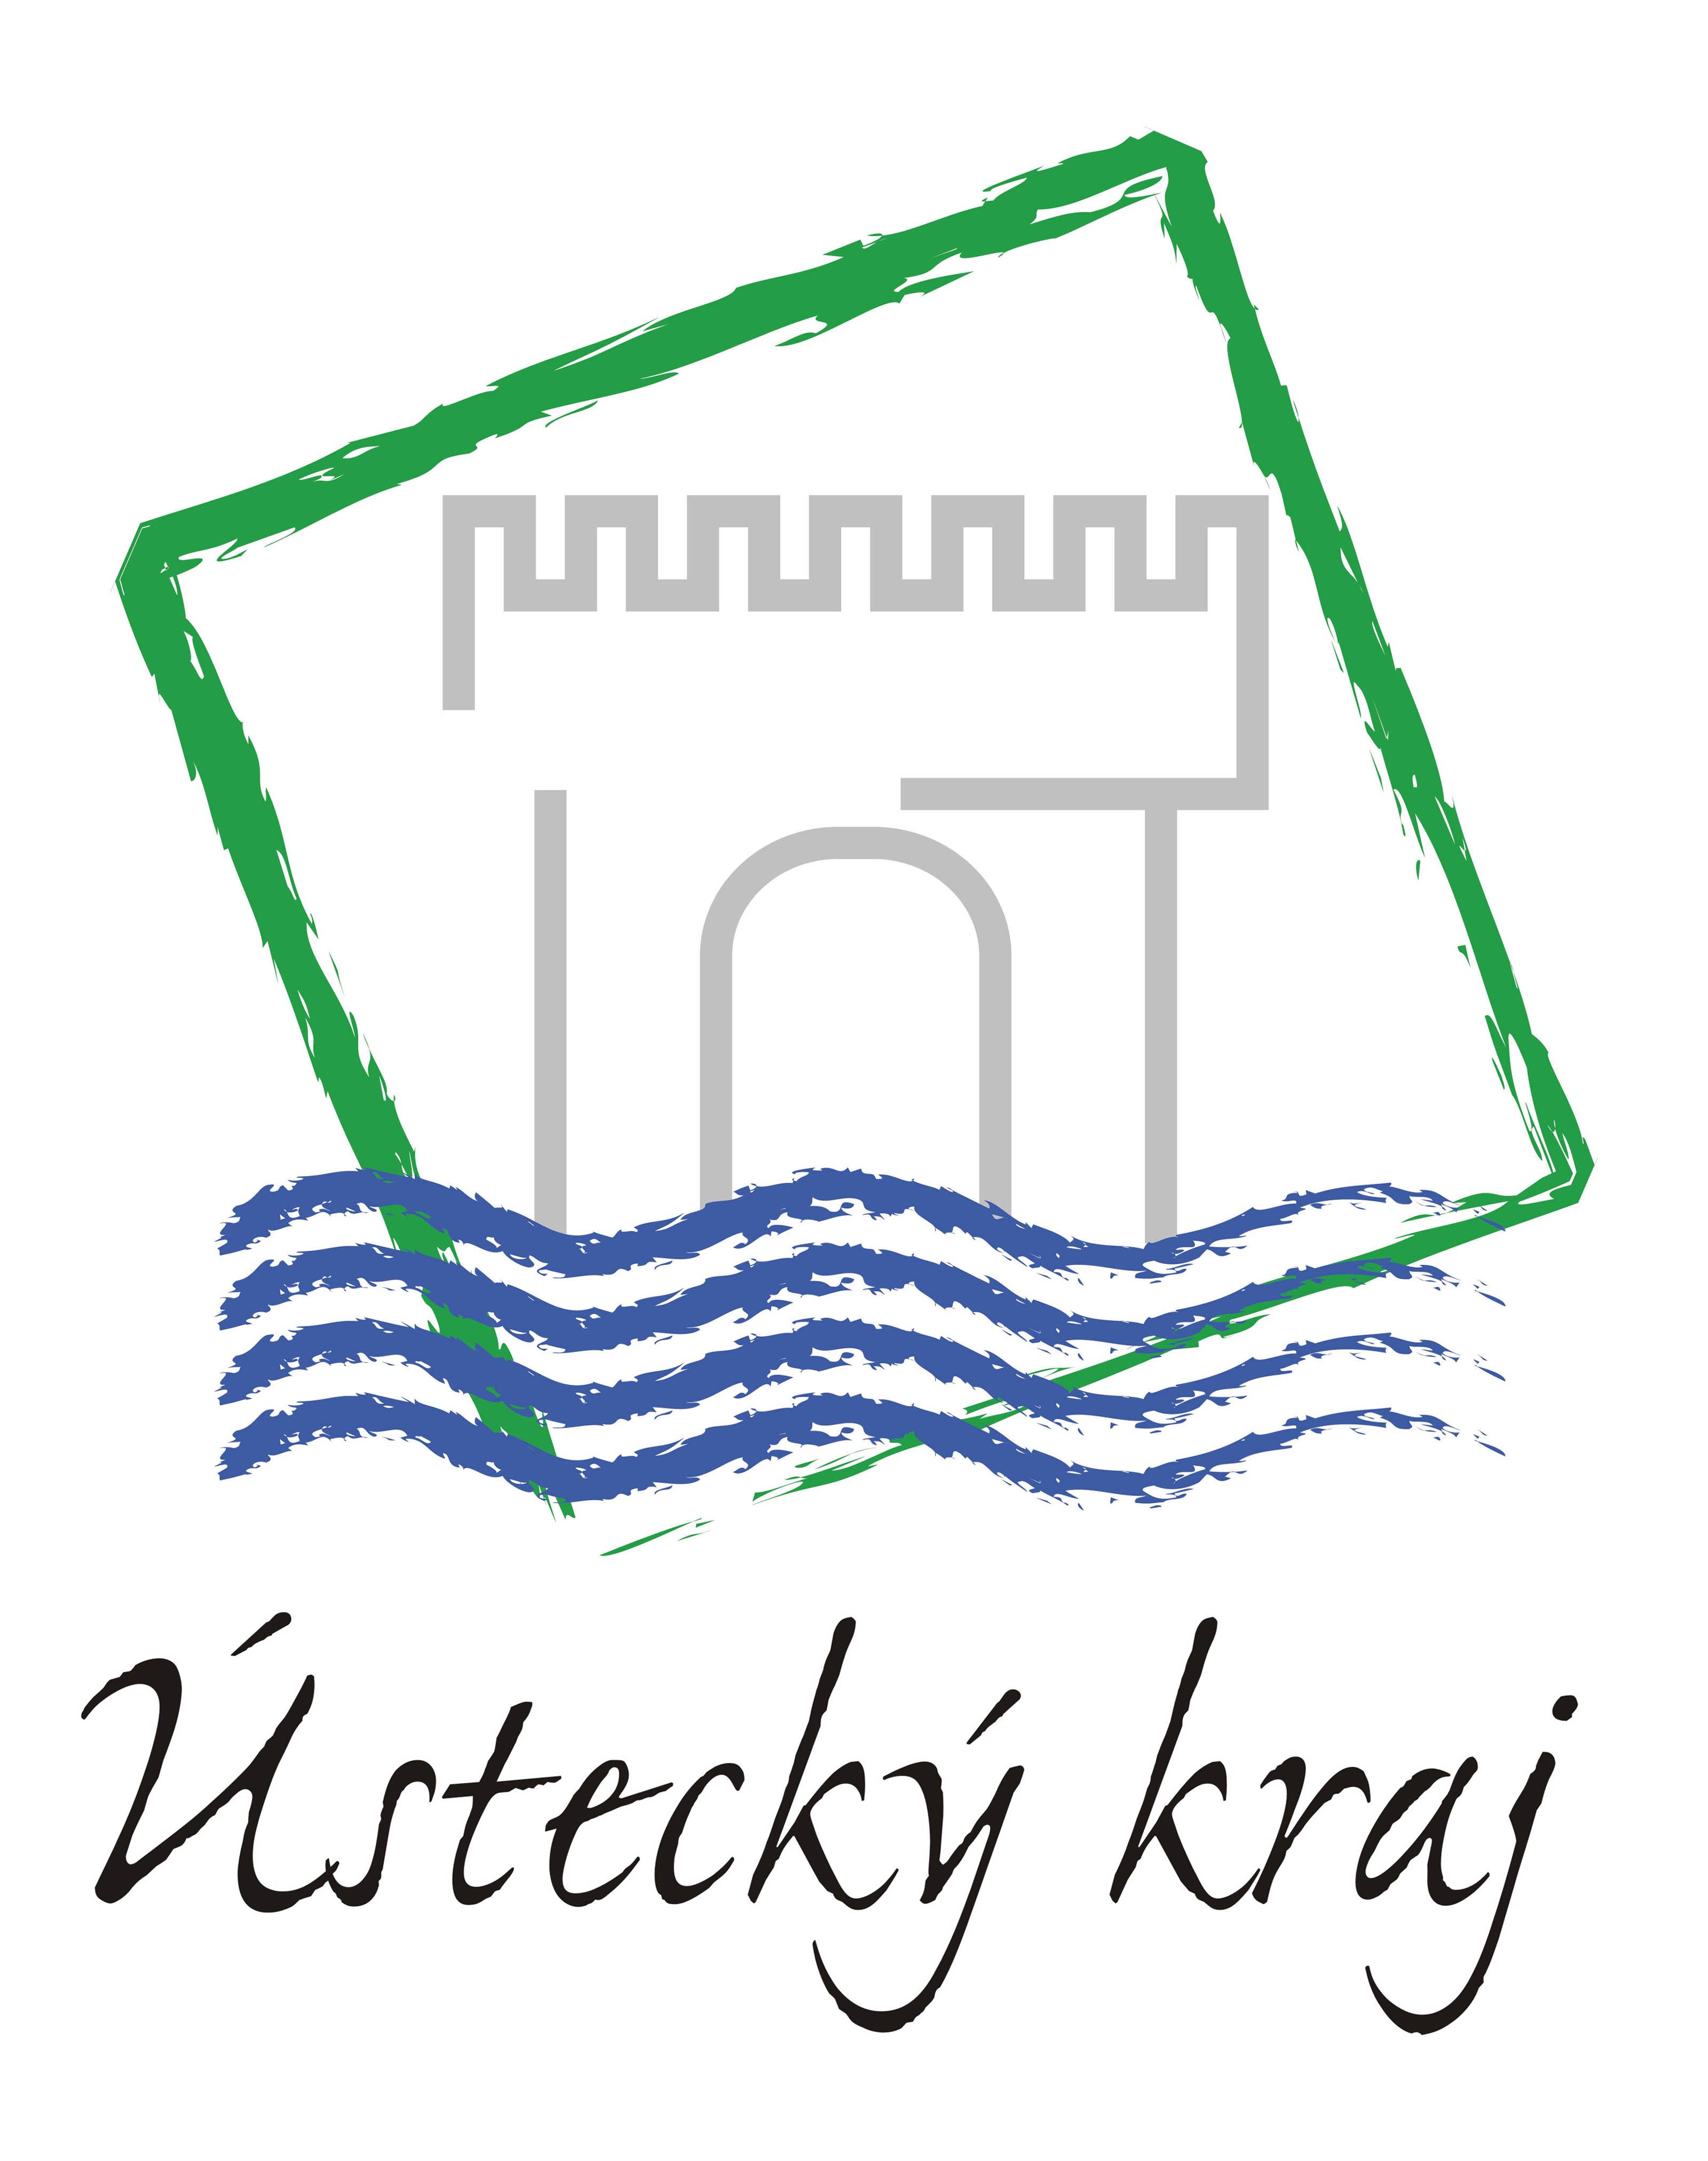 Logo Ústecký kraj